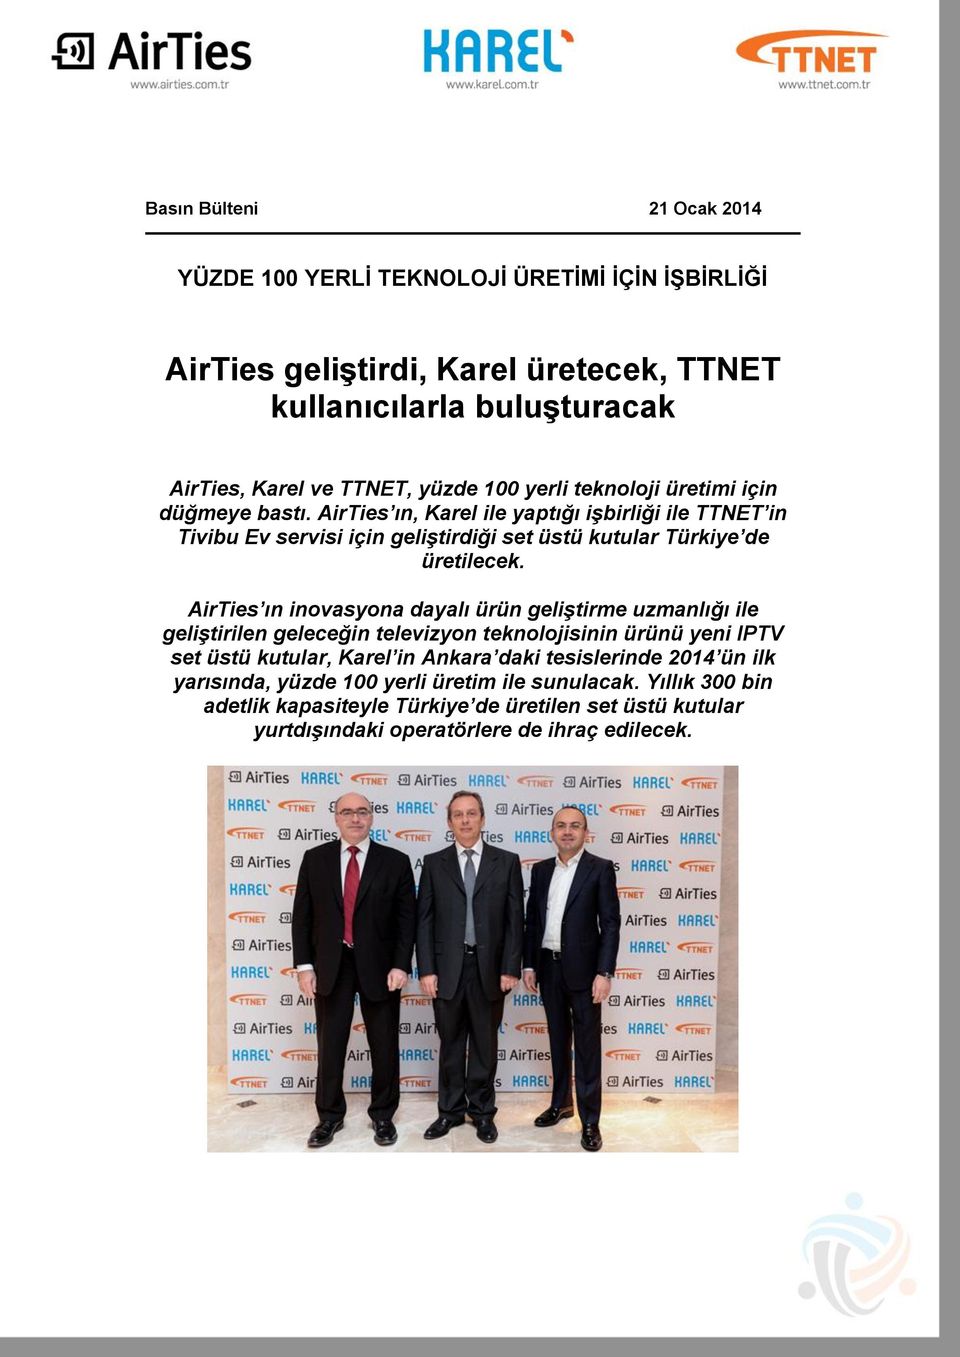 AirTies ın inovasyona dayalı ürün geliştirme uzmanlığı ile geliştirilen geleceğin televizyon teknolojisinin ürünü yeni IPTV set üstü kutular, Karel in Ankara daki tesislerinde